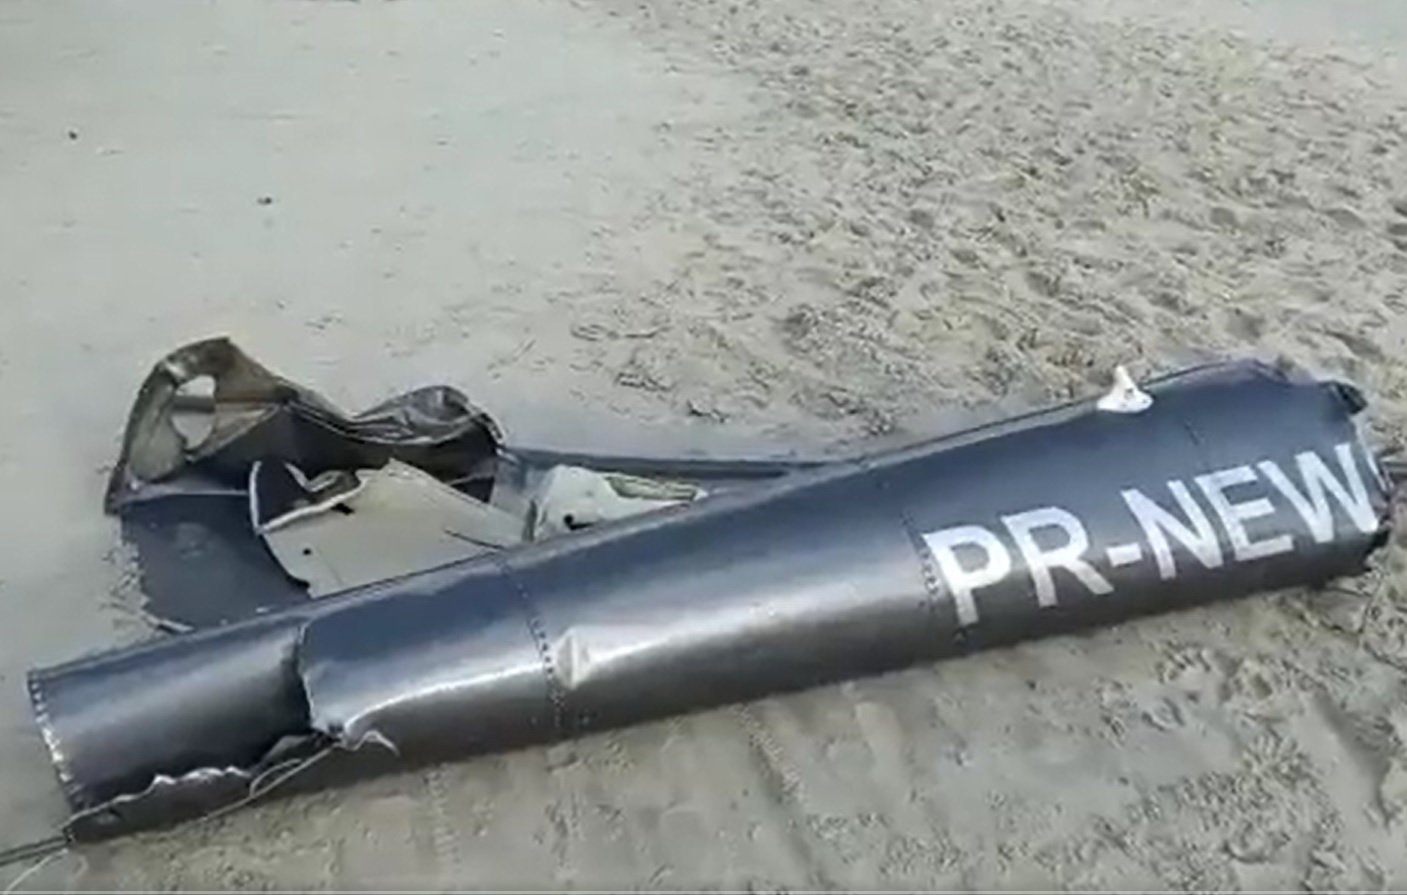 Helicóptero cai em praia de Florianópolis e três pessoas sobrevivem